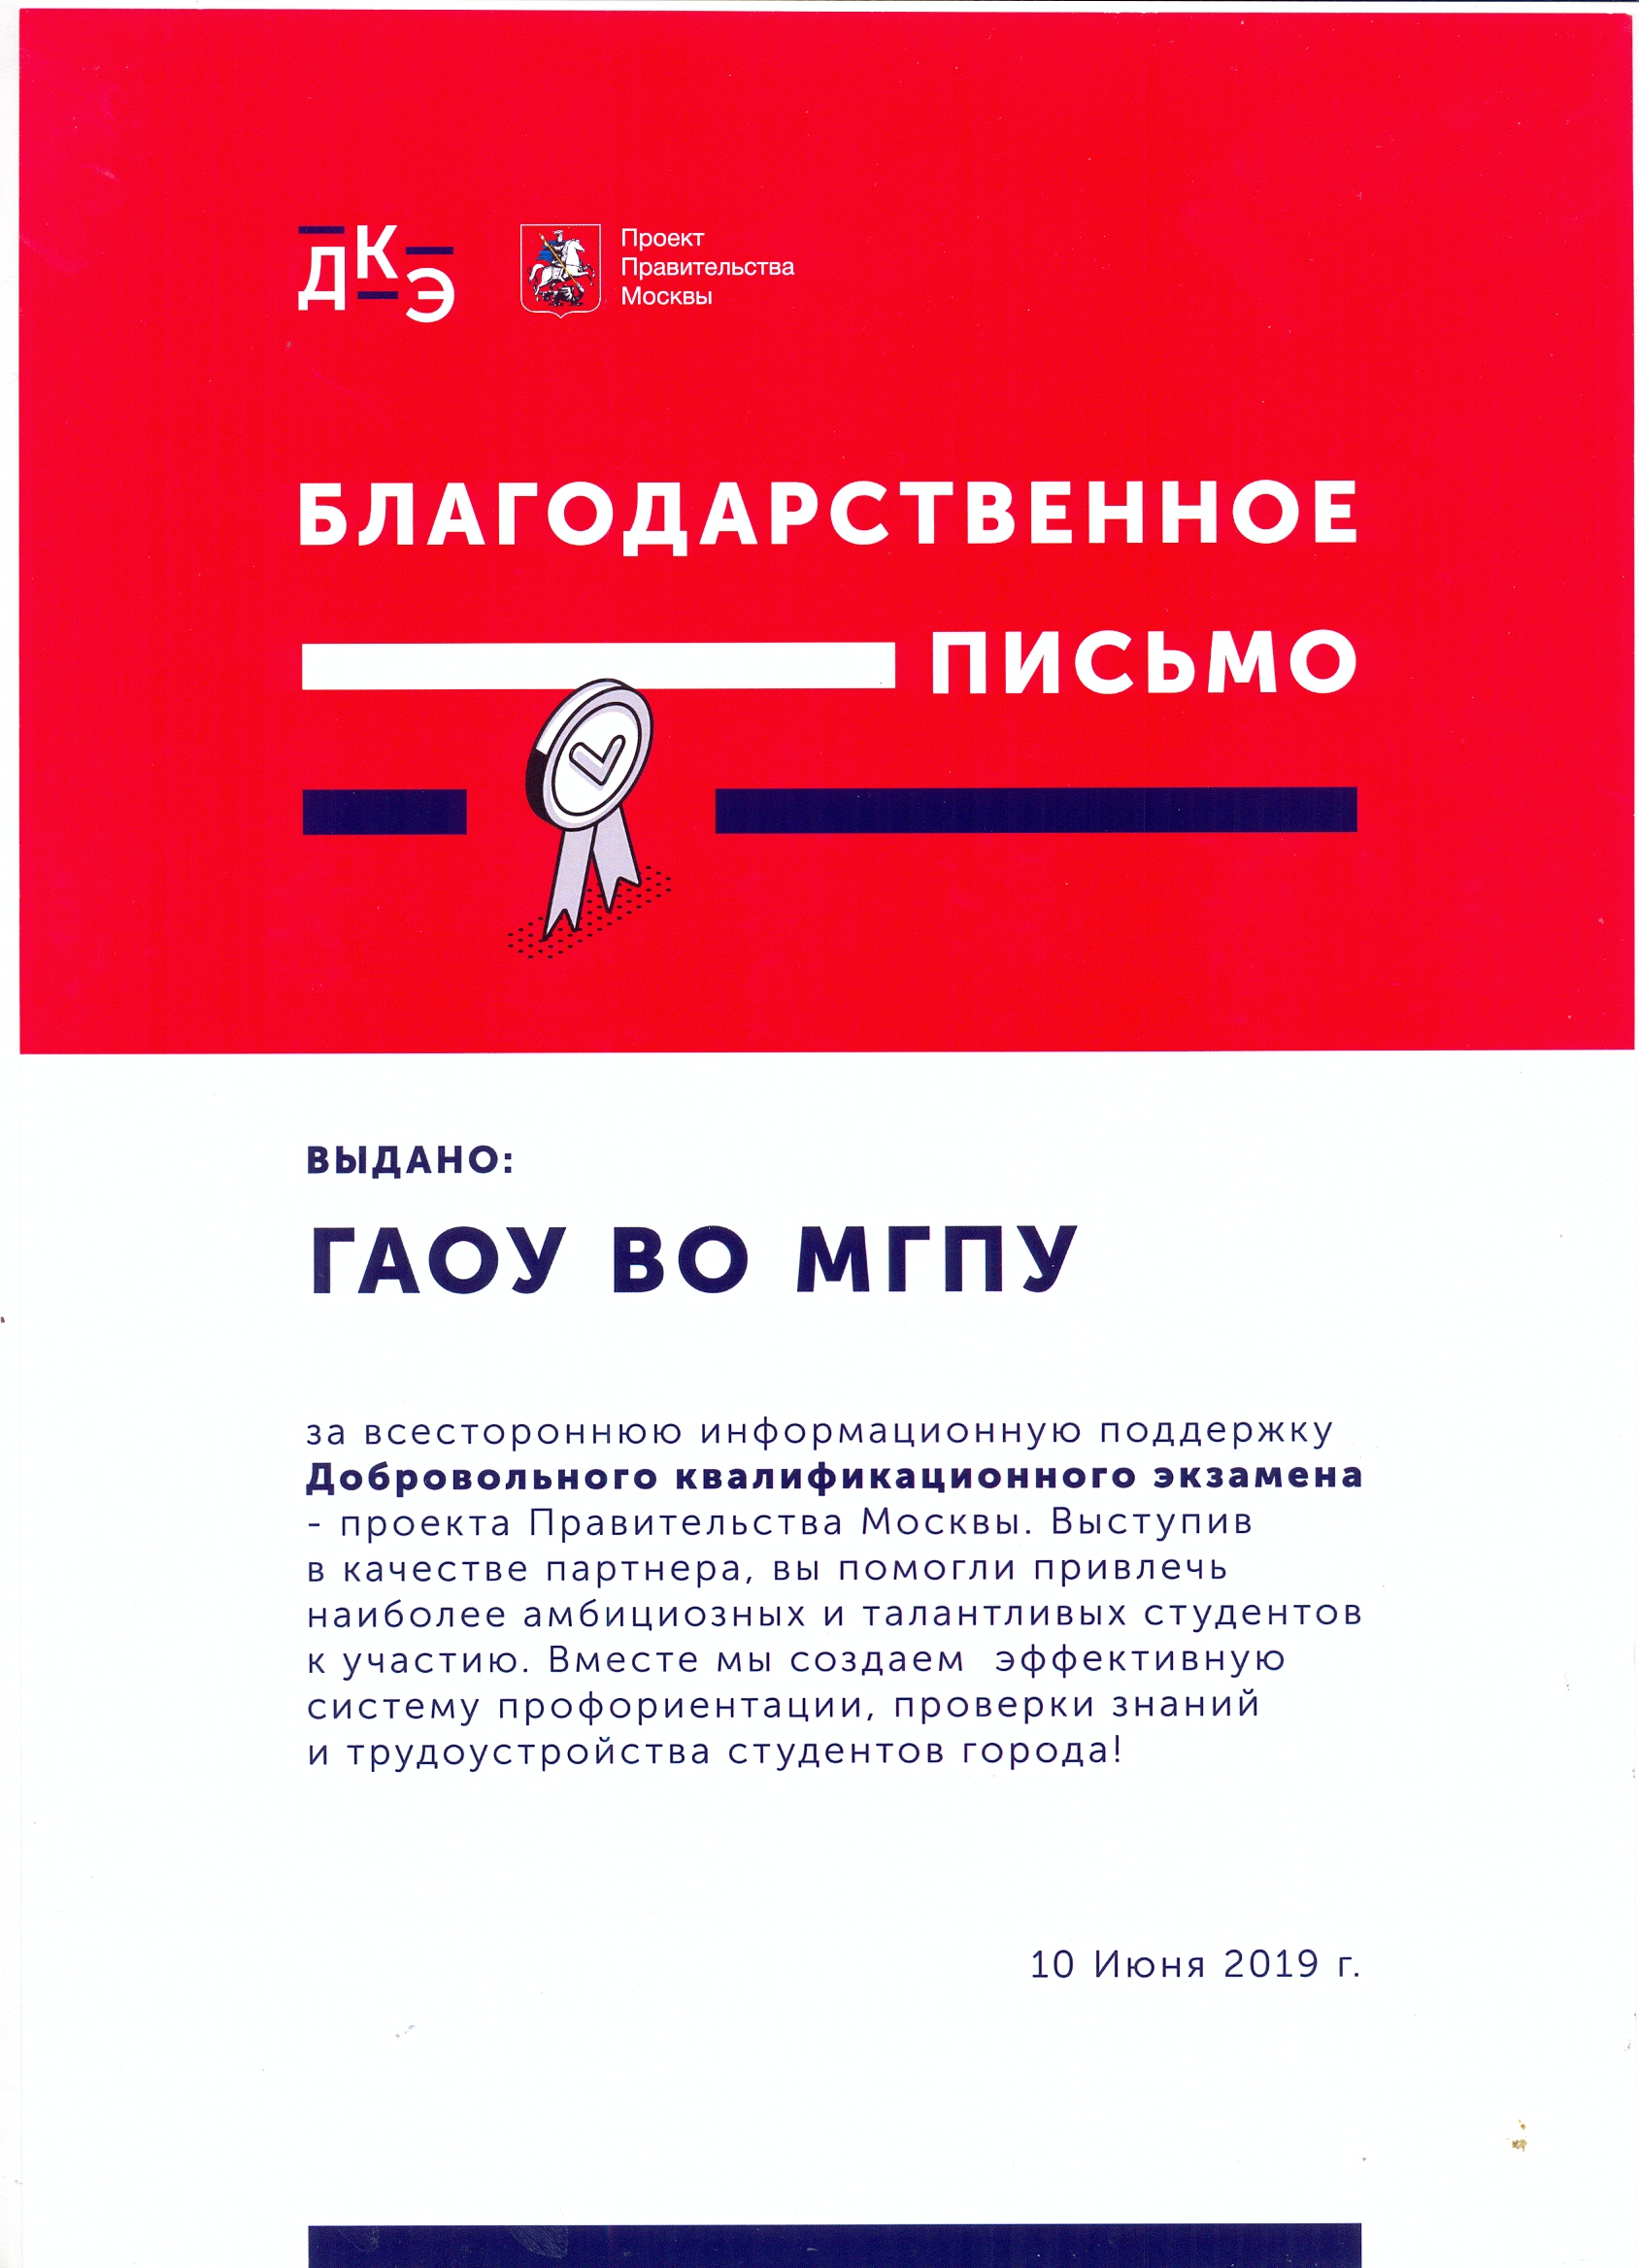 Благодарственное письмо МГПУ от проекта Правительства Москвы